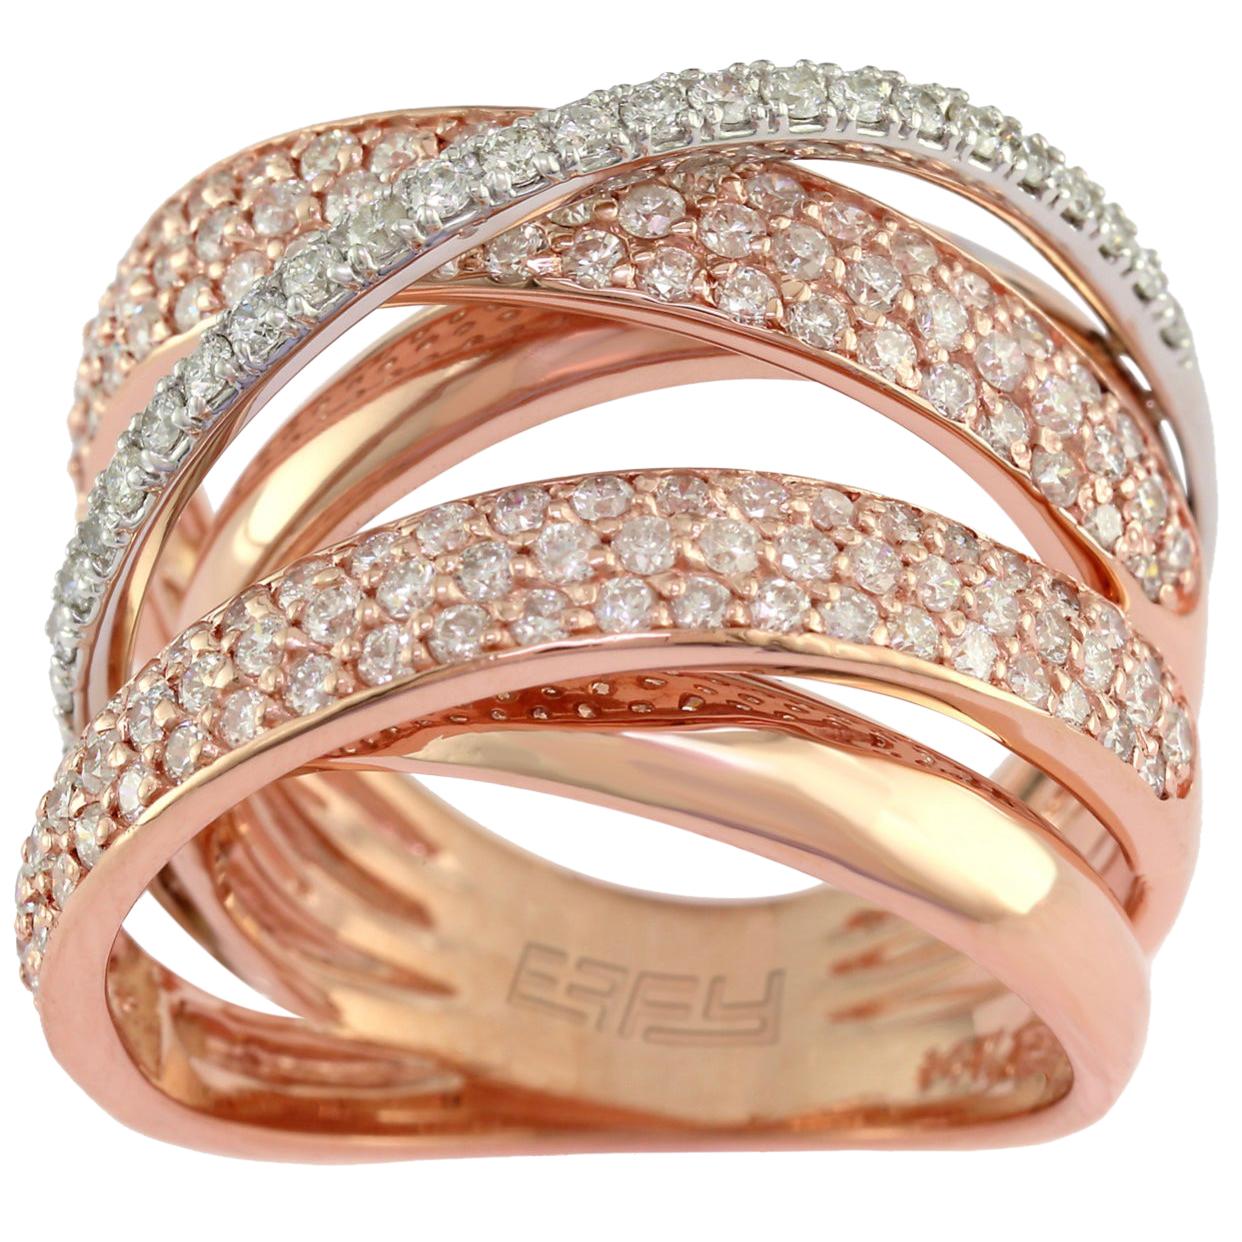 Designer Effy's 1.6 Carat Diamond Cocktail Ring 14 Karat Rose or White Gold Ring